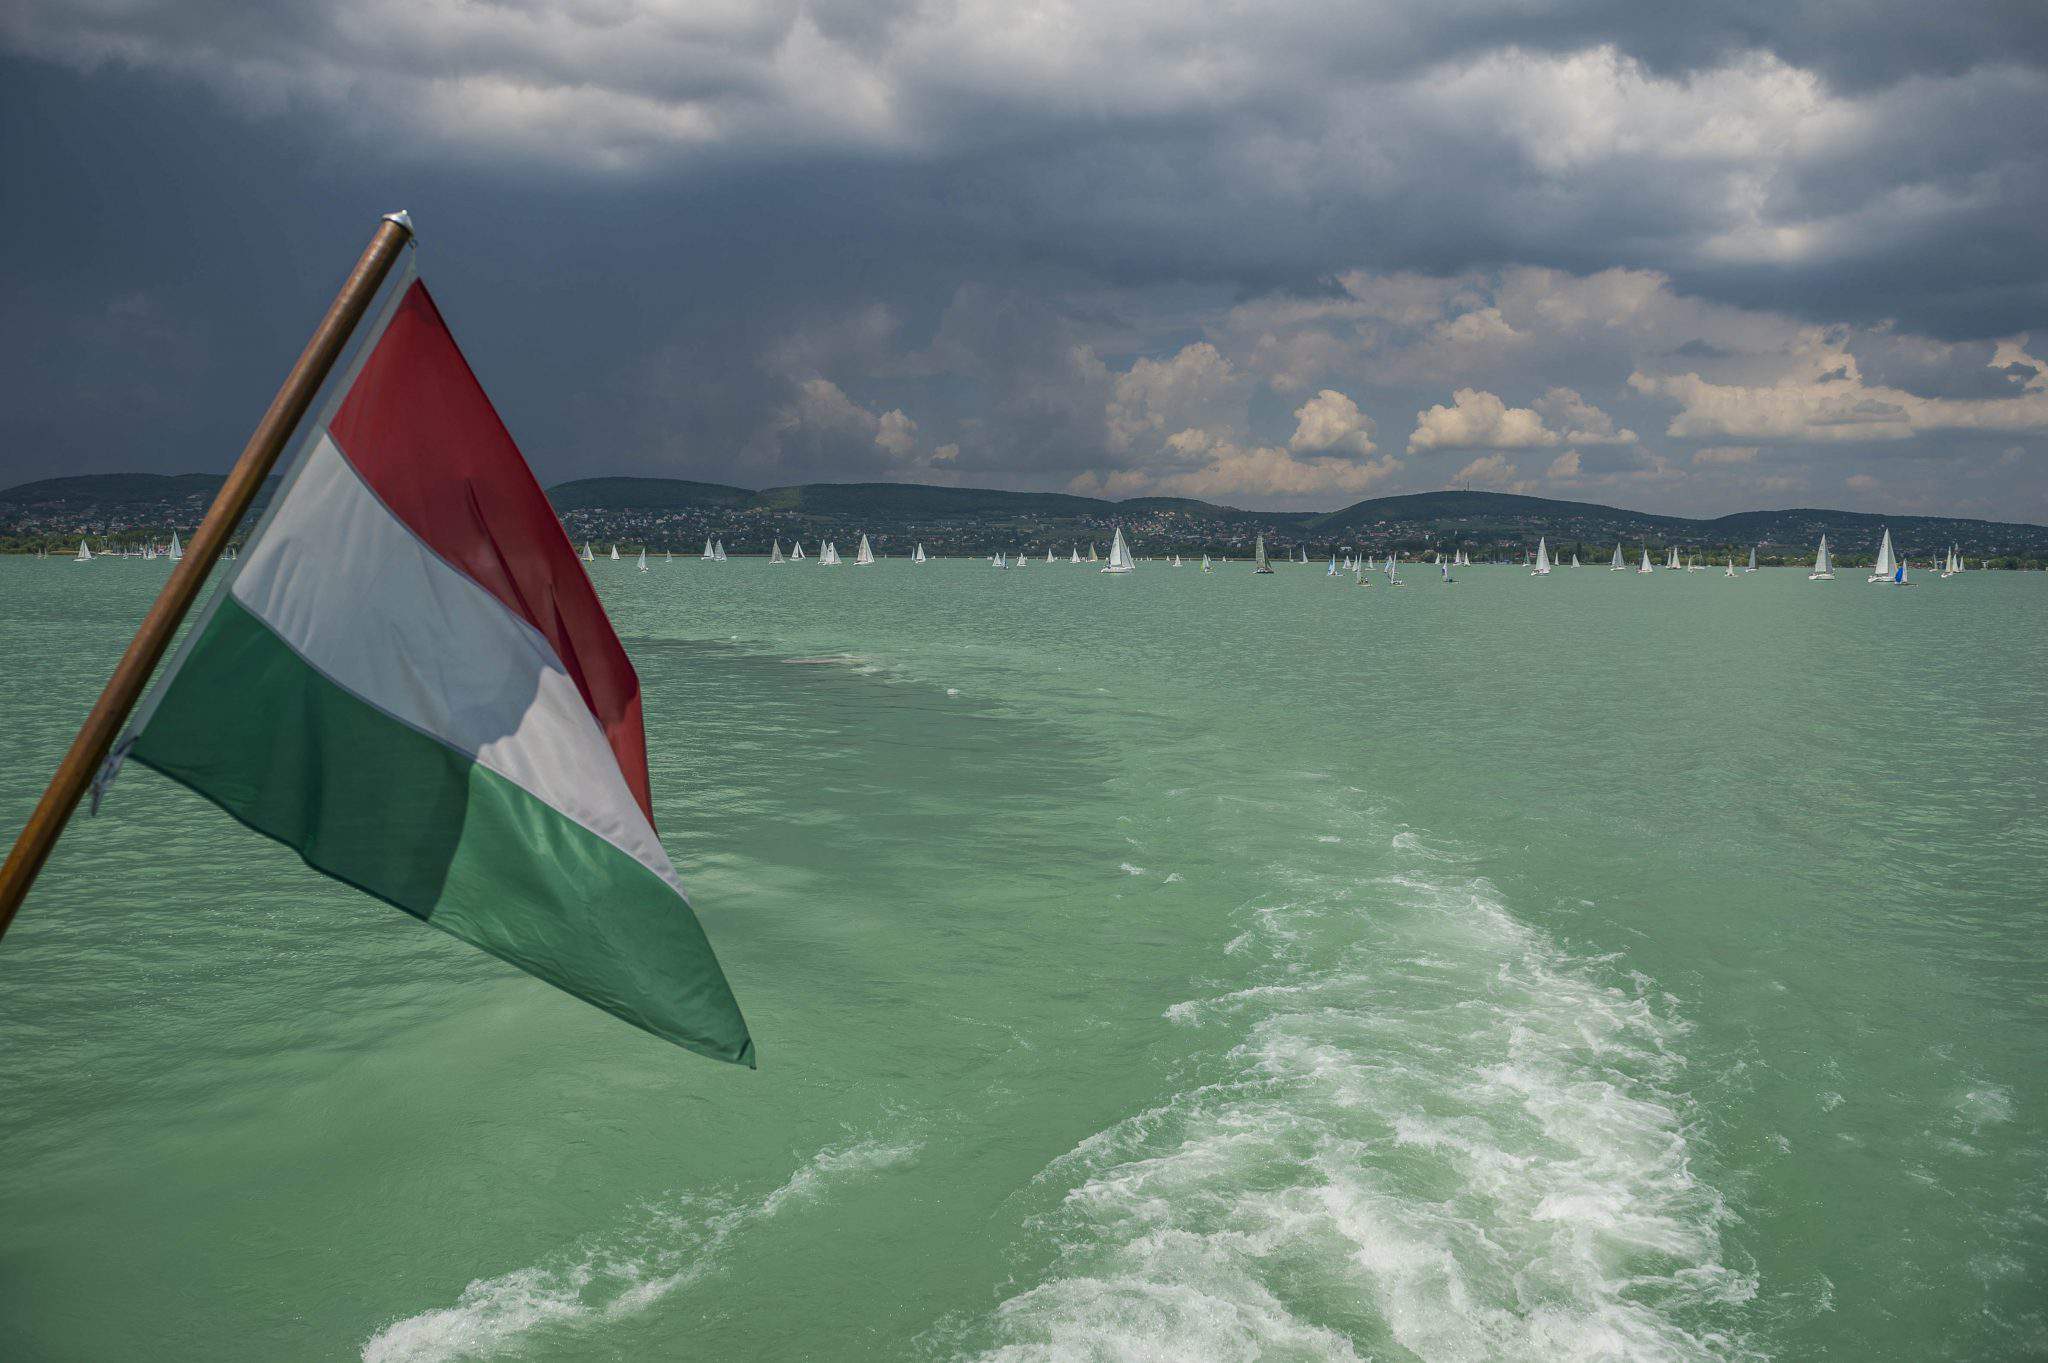 巴拉顿湖匈牙利国旗航行